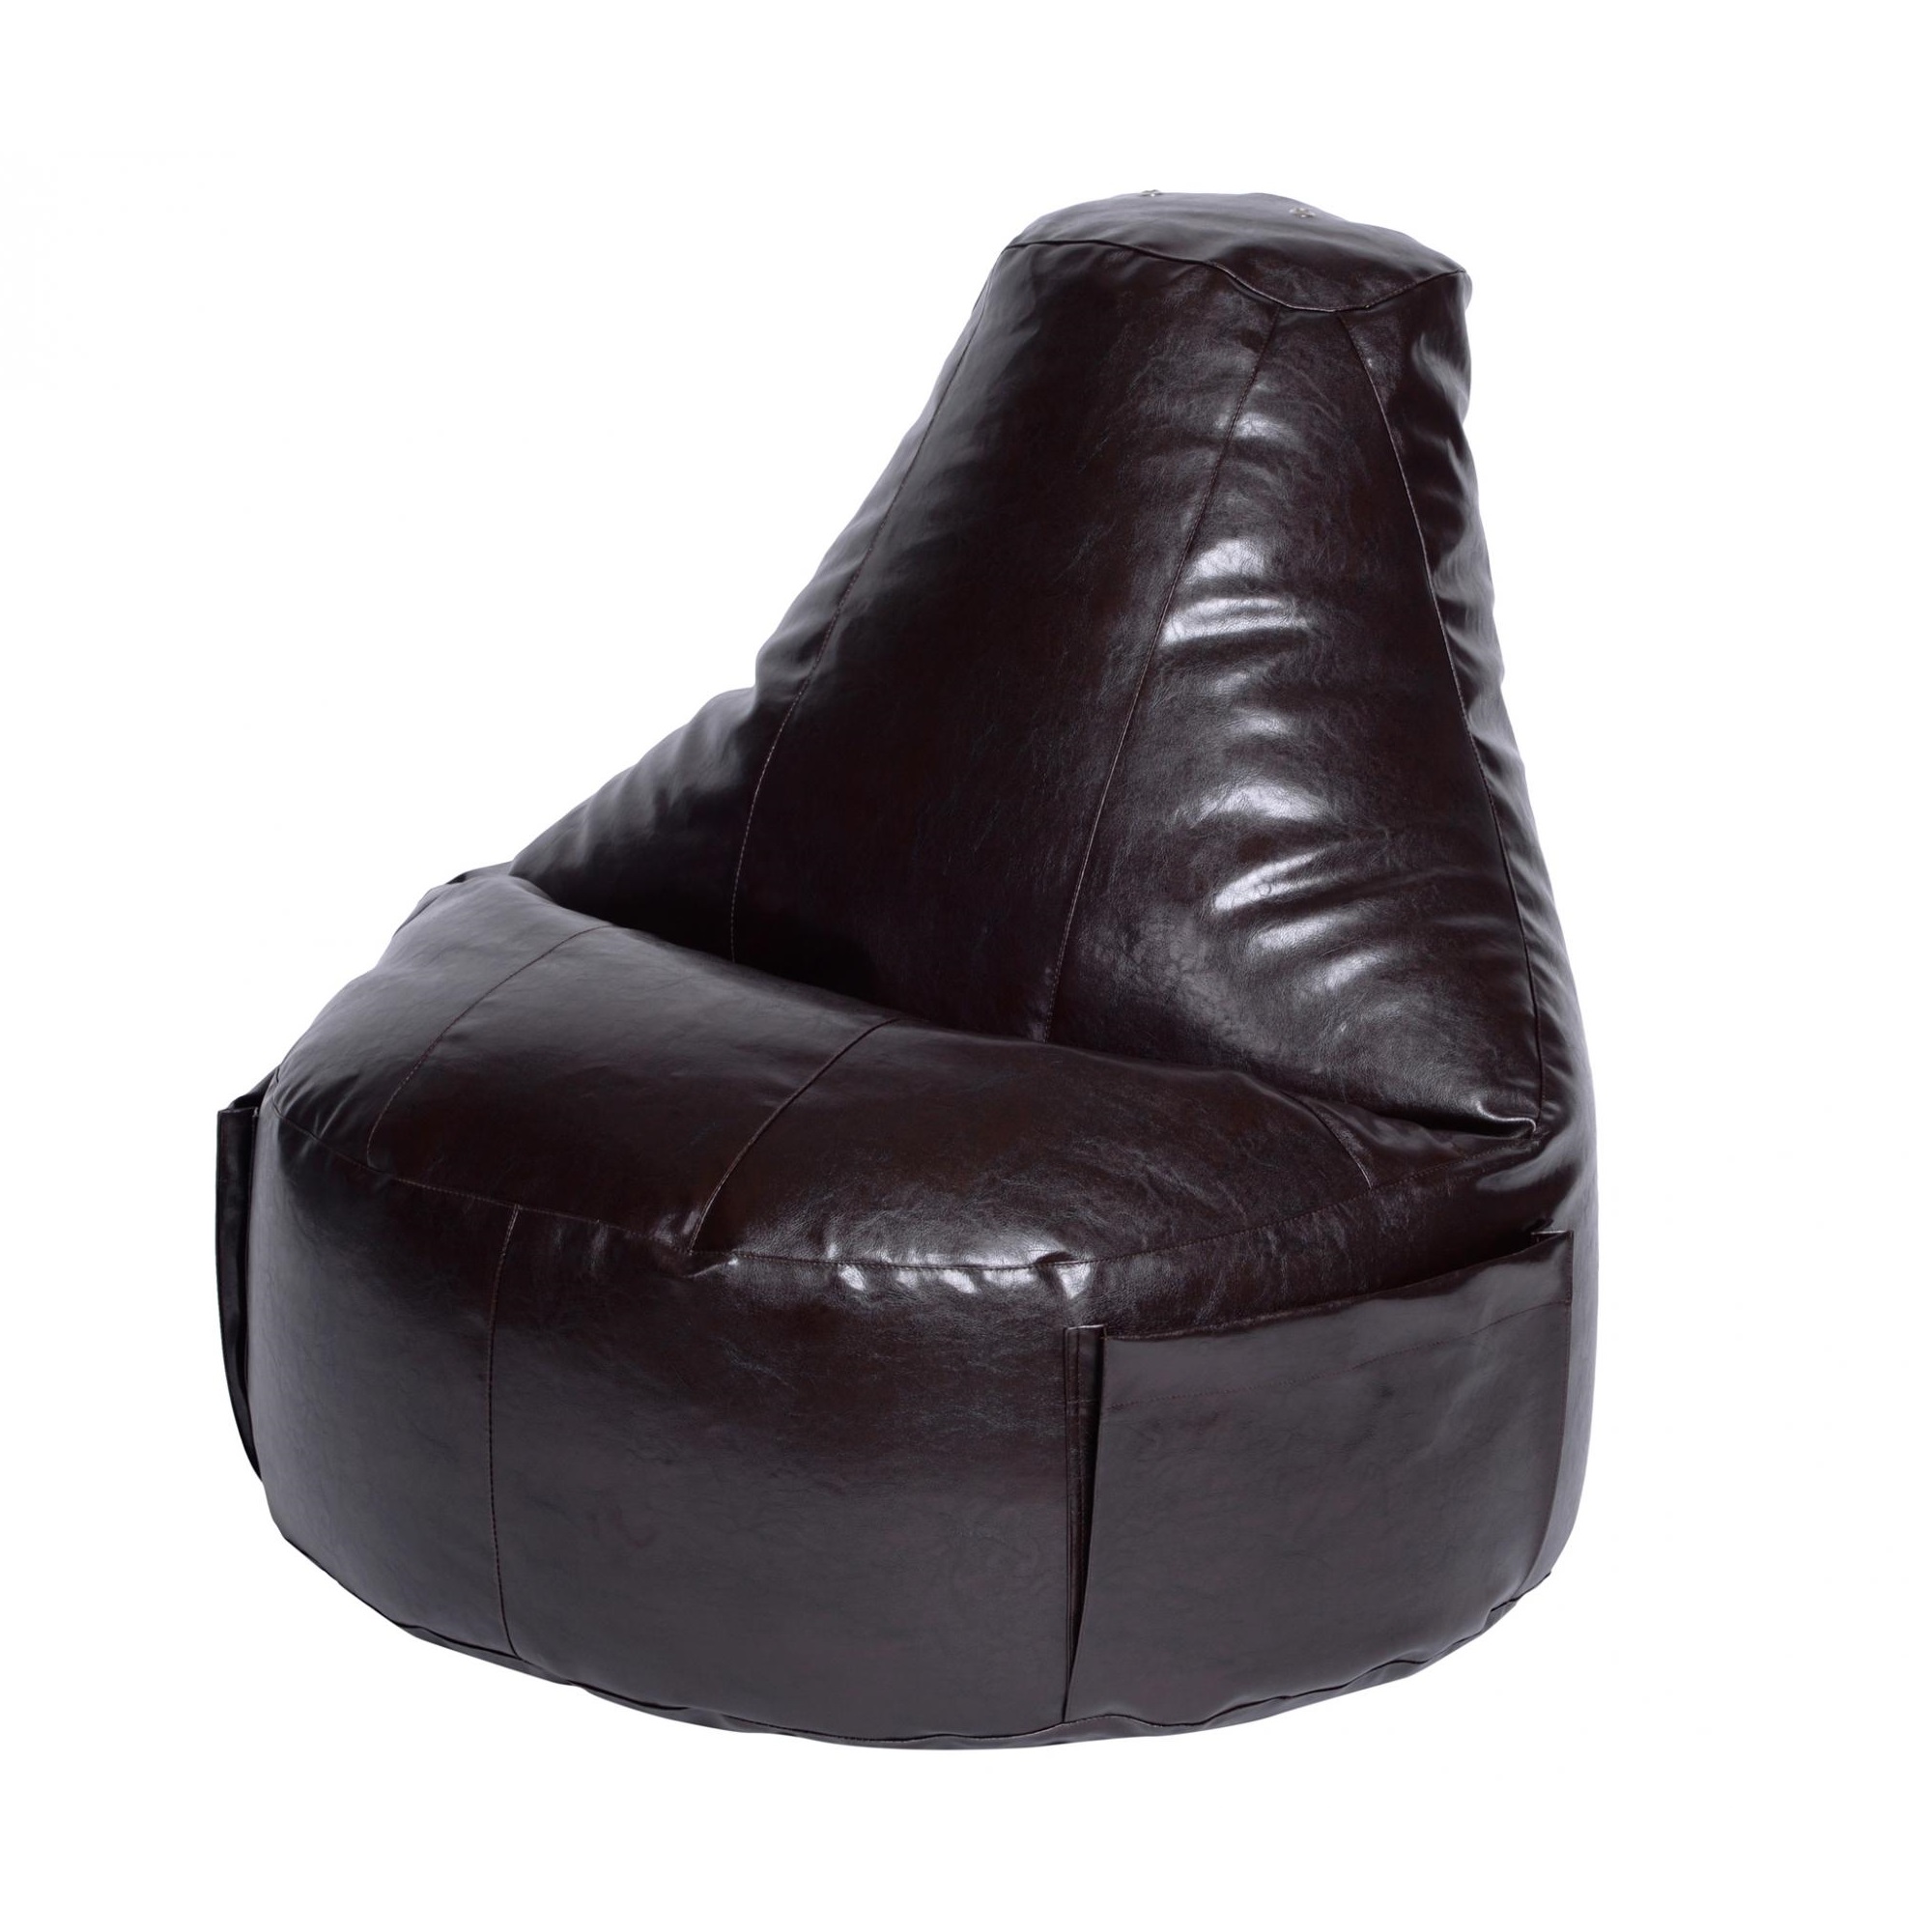 Кресло Dreambag Comfort коричневое экокожа 150x90 см кресло мешок ашли голубая экокожа xl